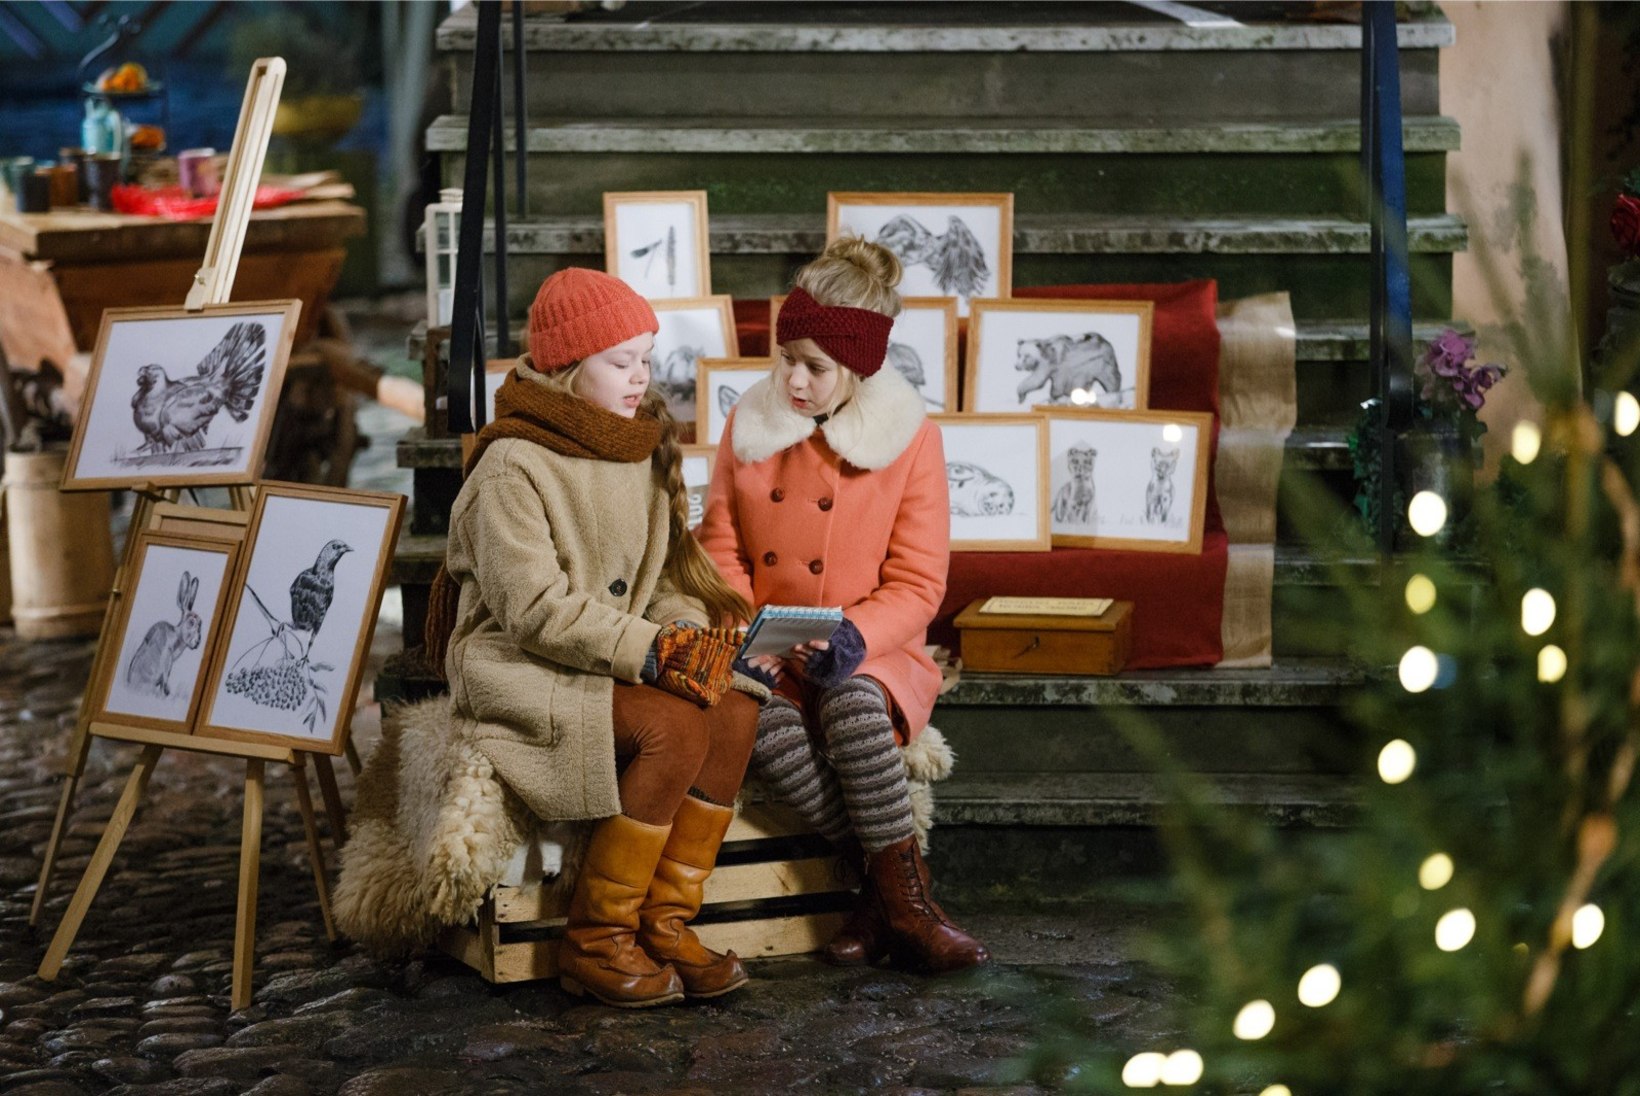 EESTI KINO TOP 7 | Kodumaine jõulufilm vallutas nii eestlaste südamed kui kinoedetabeli